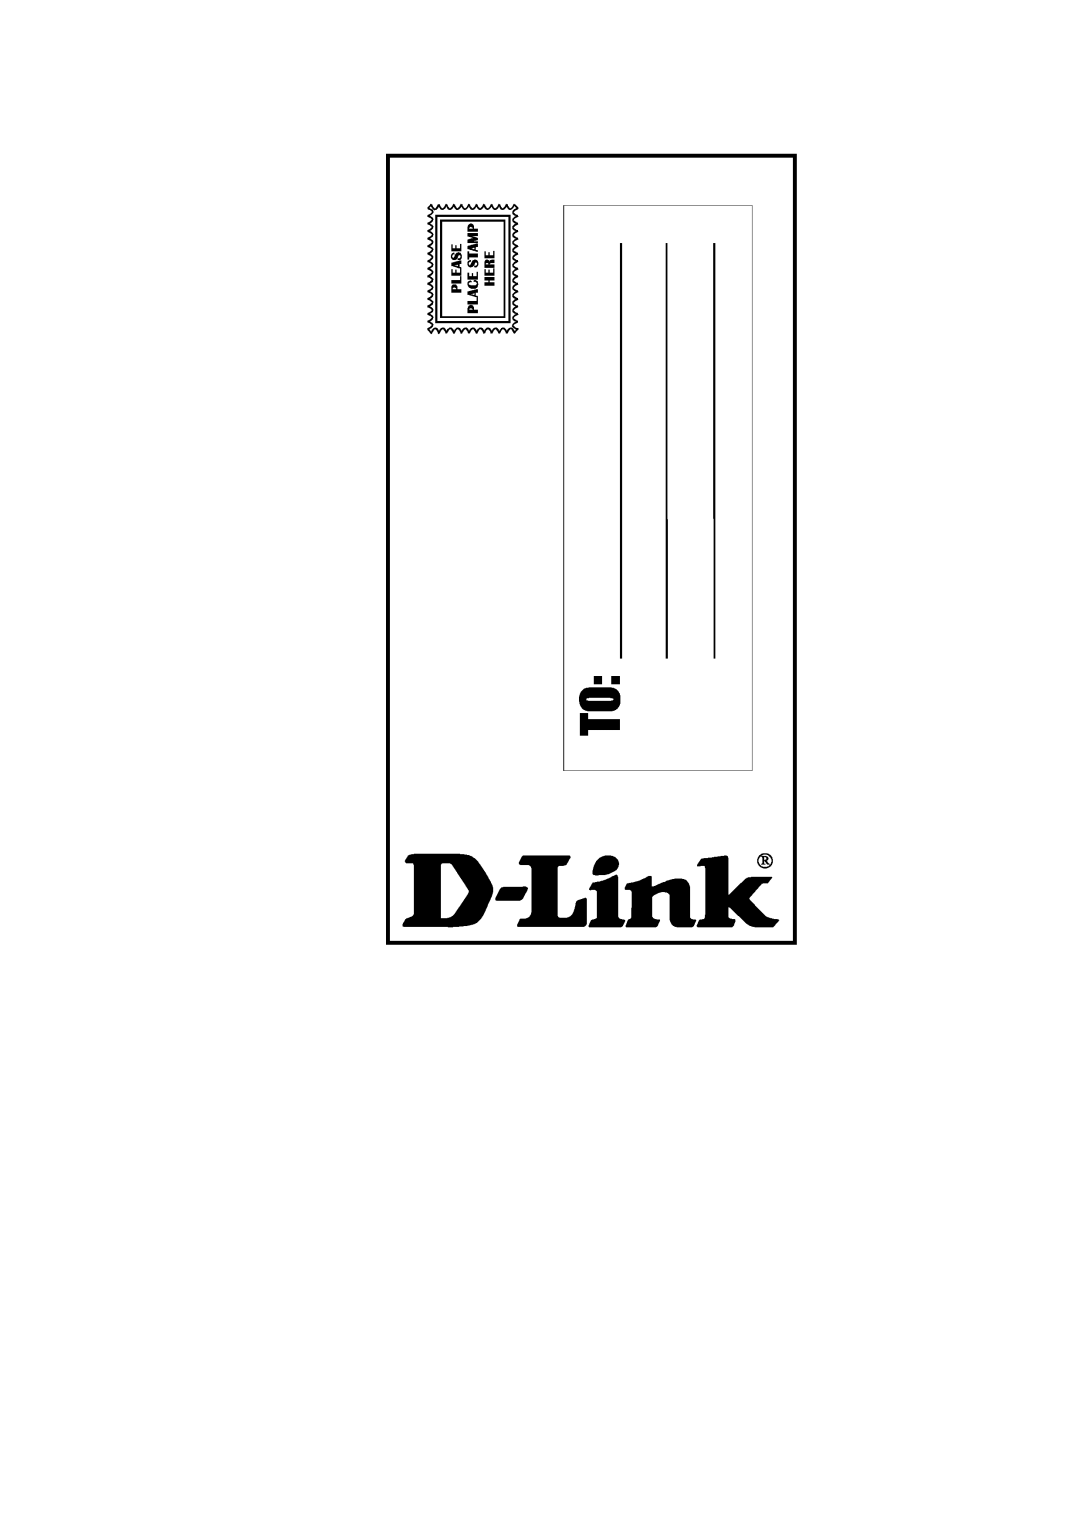 D-Link DI-308 manual 